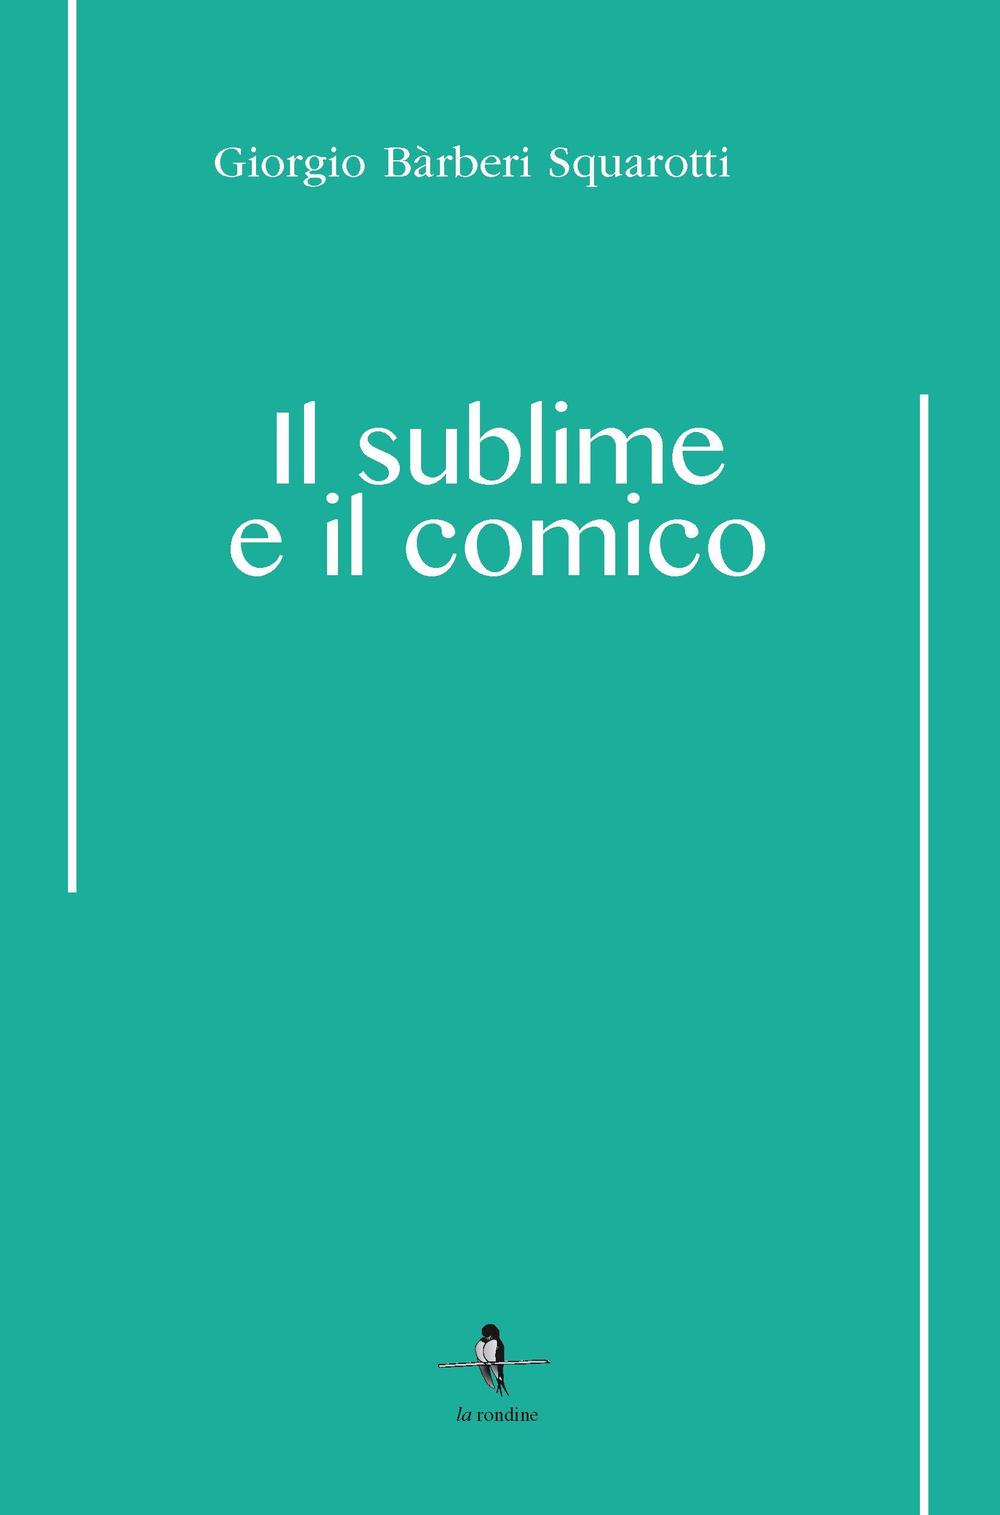 Libri Barberi Squarotti Giorgio - Il Sublime E Il Comico NUOVO SIGILLATO, EDIZIONE DEL 15/11/2016 SUBITO DISPONIBILE